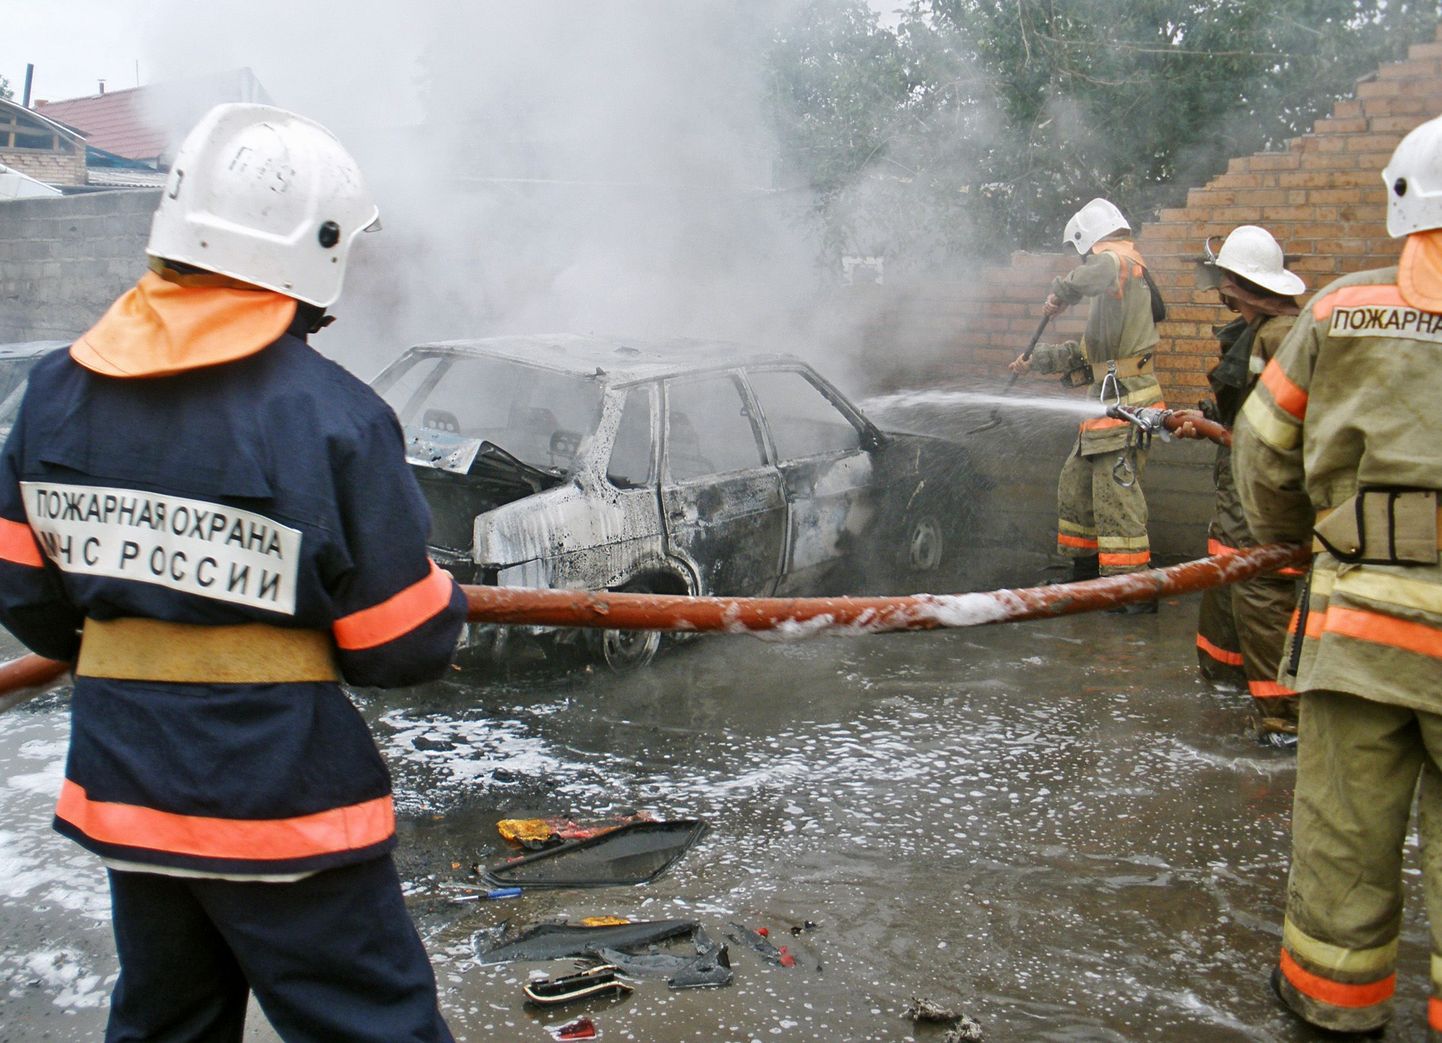 Inguššia tuletõrjujad plahvatuspaigal kustutamas.